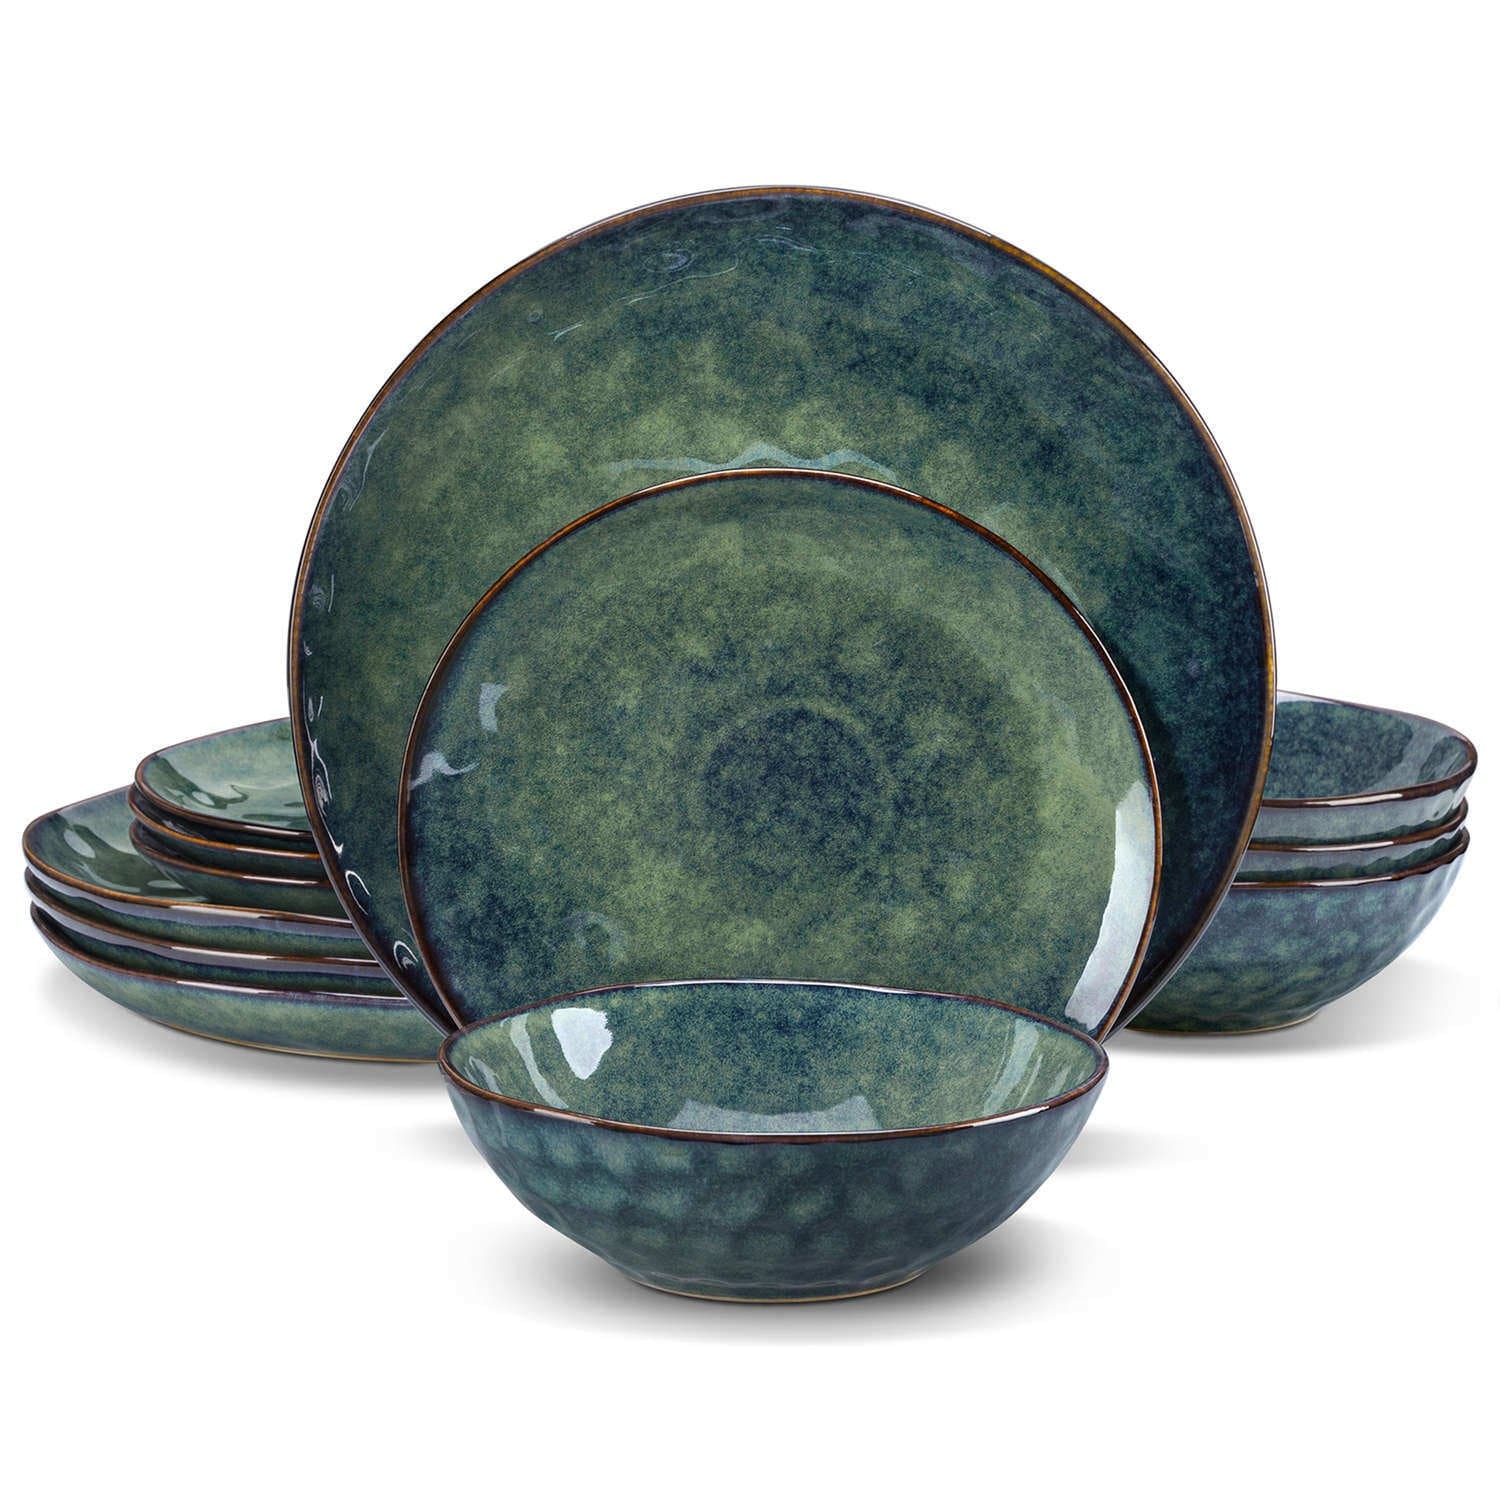 Starry 12 Piece Stoneware Dinnerware Sets -  Green